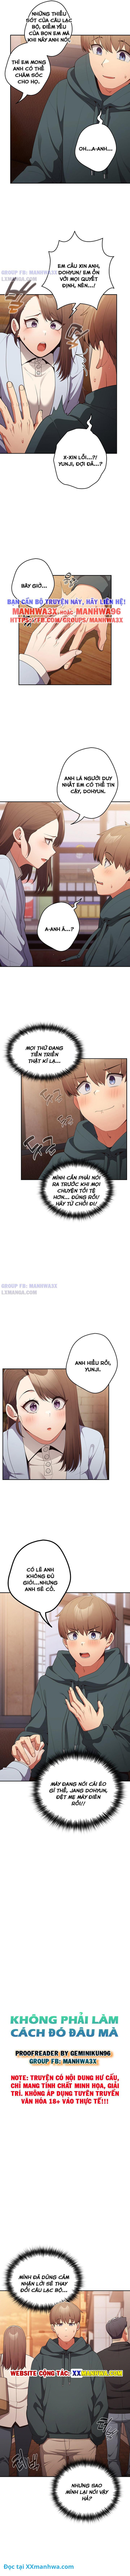 manhwax10.com - Truyện Manhwa Không phải làm cách đó đâu mà Chương 16 Trang 2